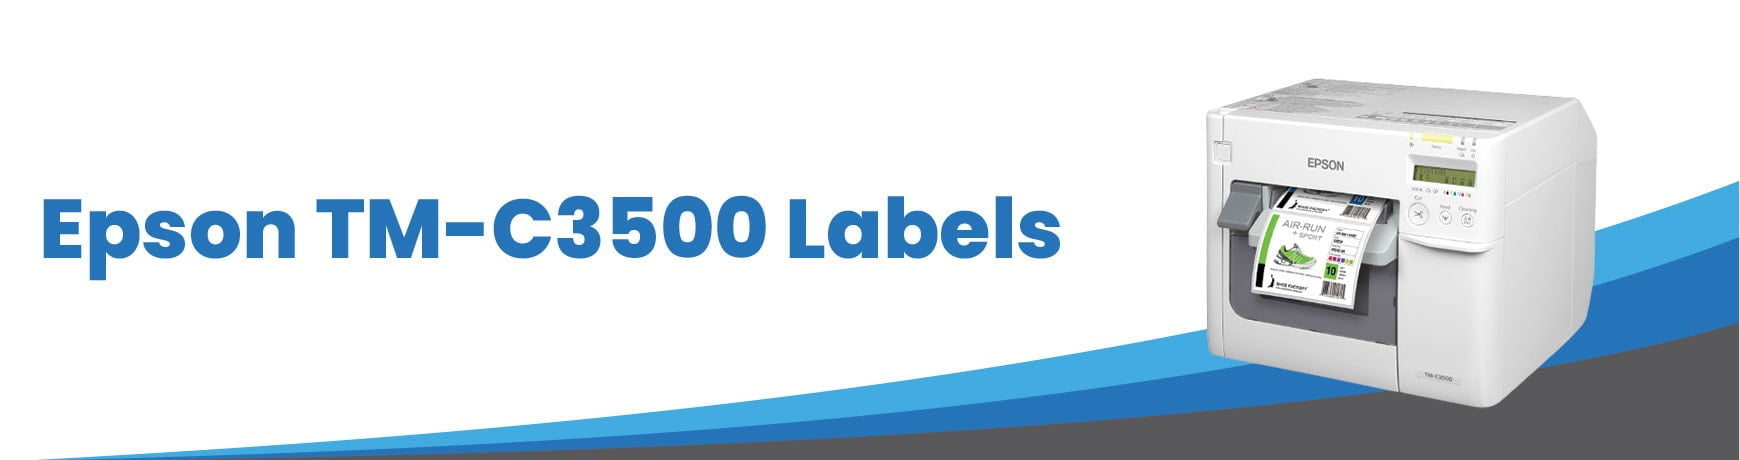 Epson TM-C3500 Labels